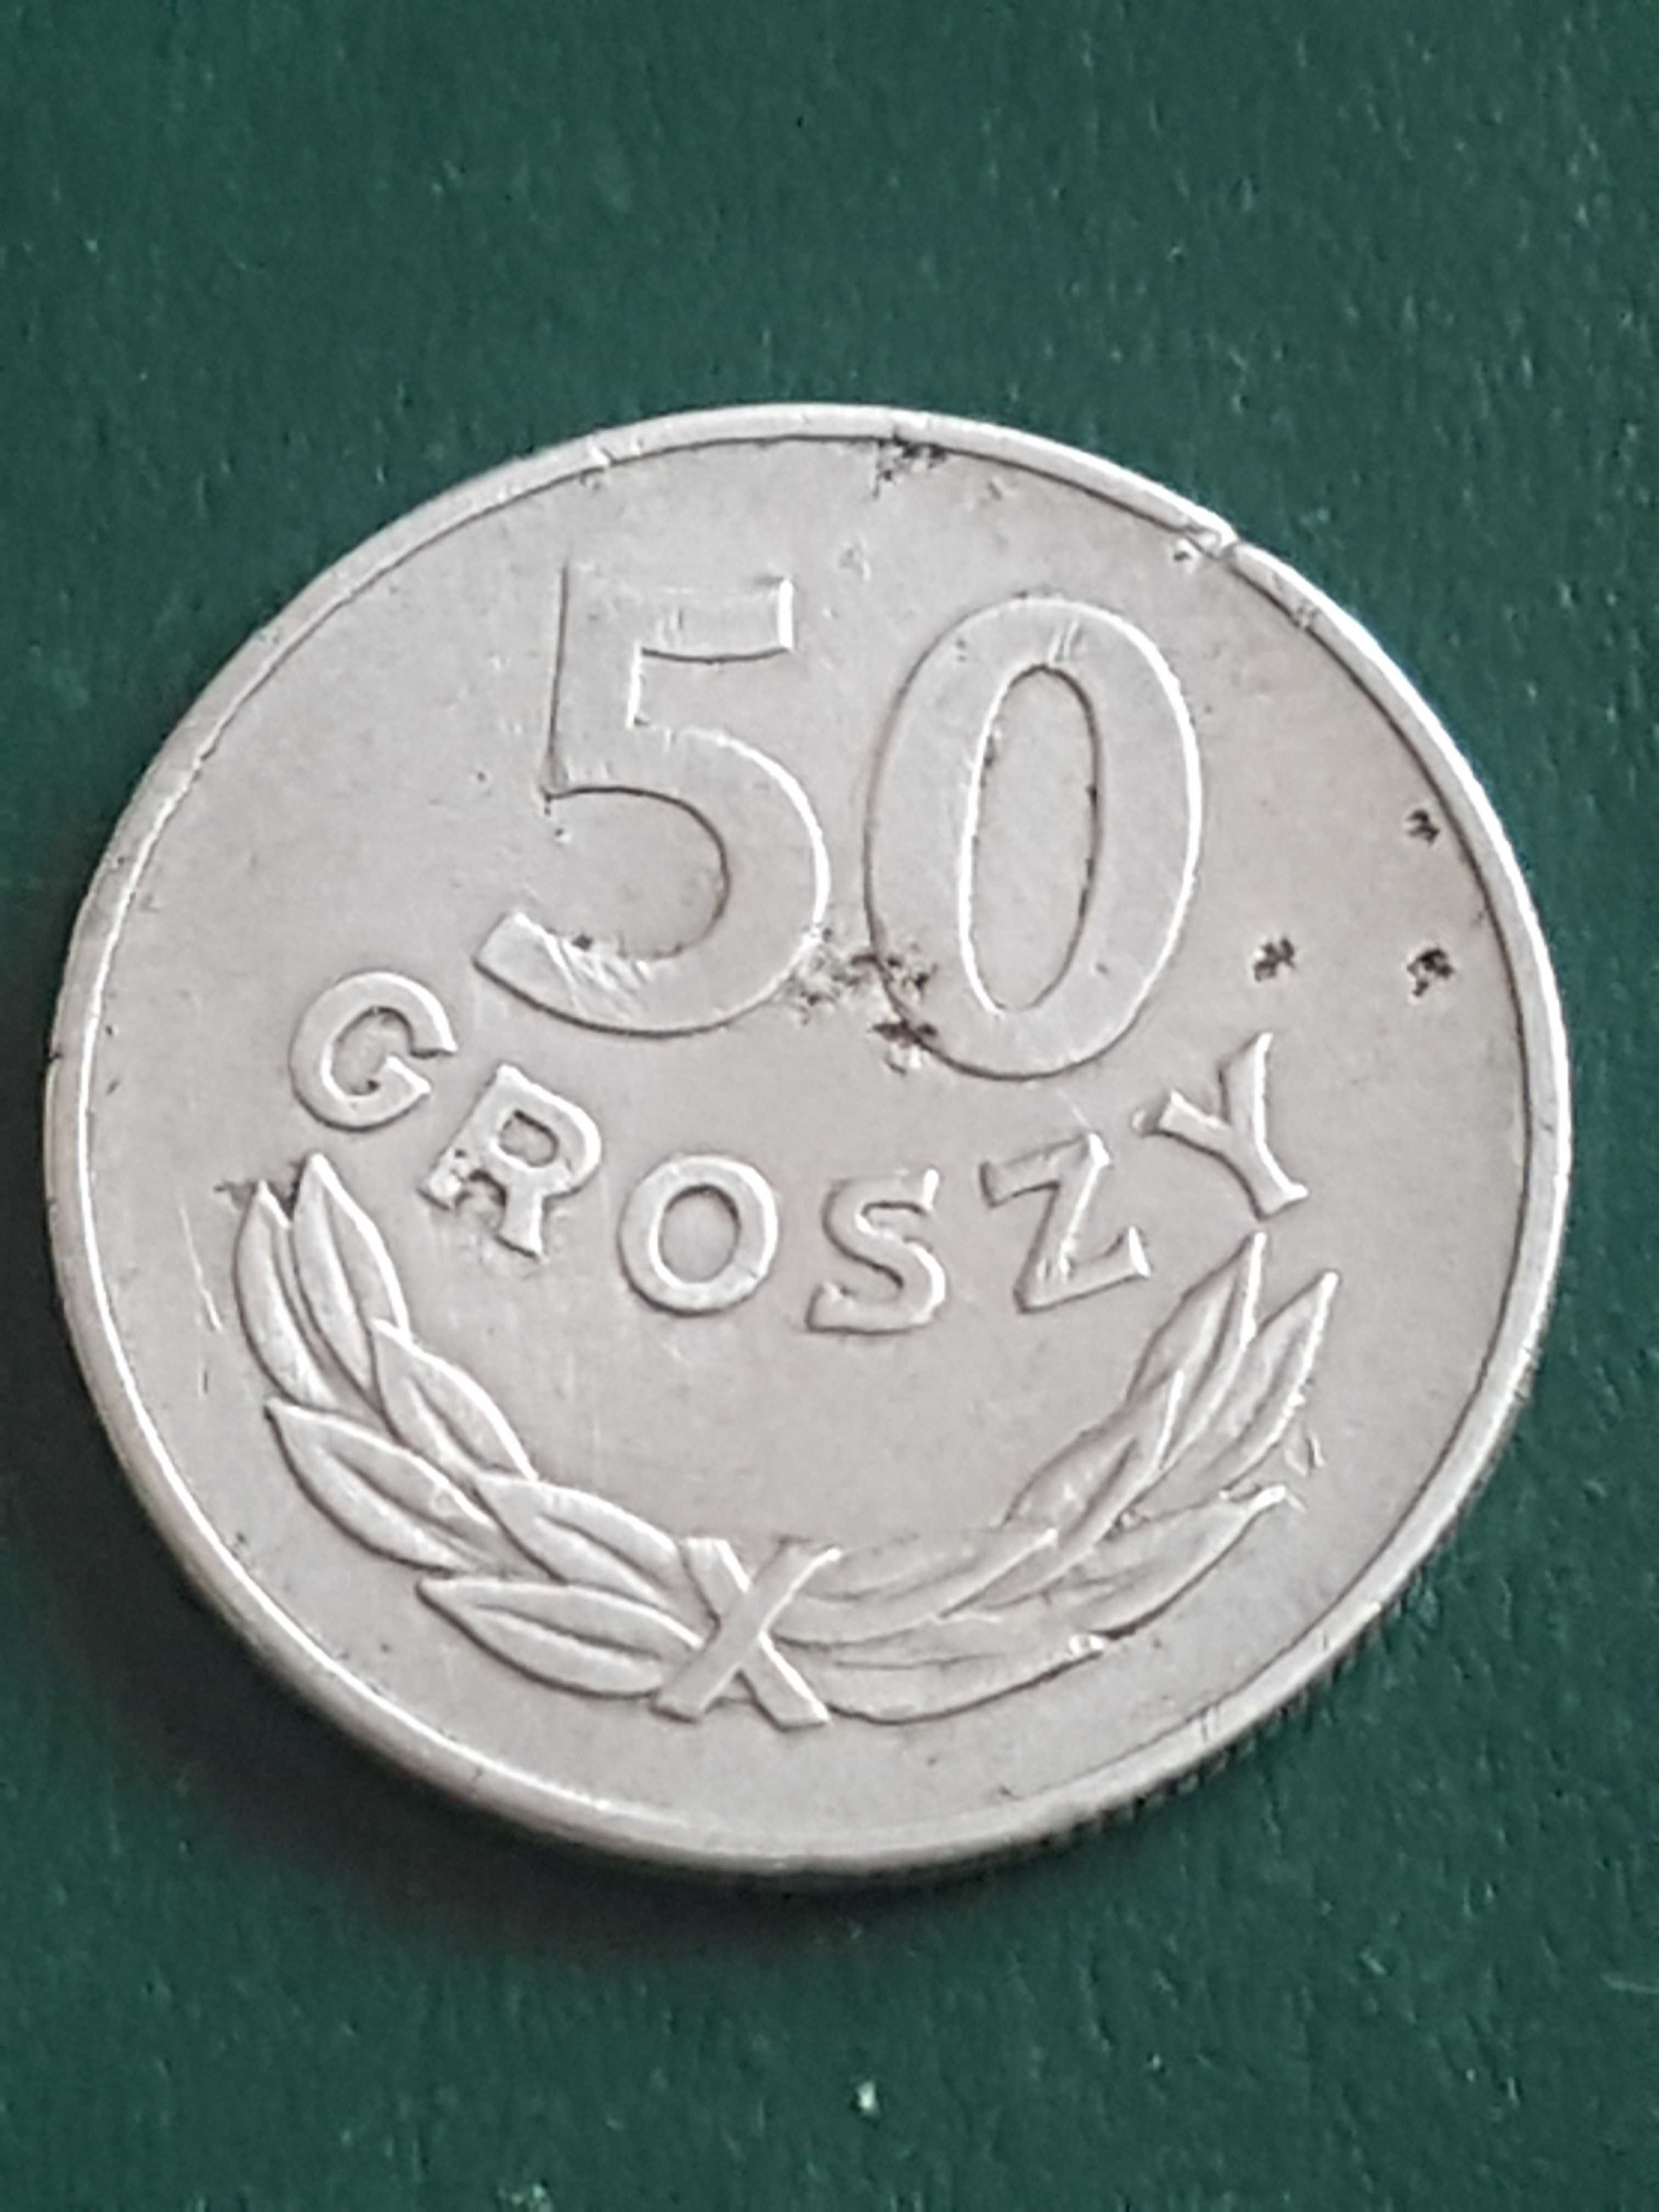 50 groszy z 1976